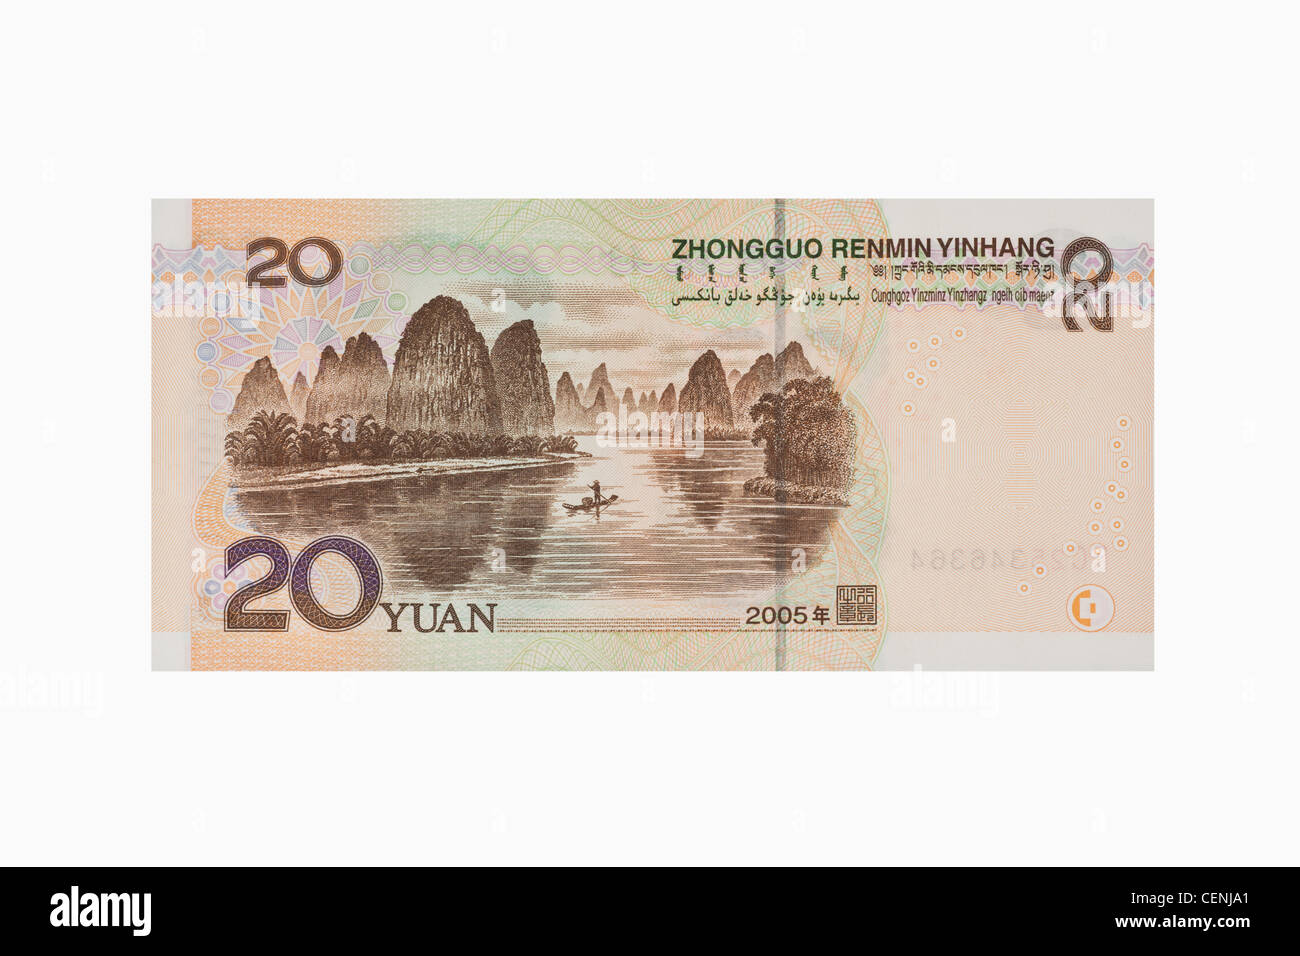 Lato posteriore del 20 yuan bill. Il renminbi, la valuta cinese, è stato introdotto nel 1949 dopo la fondazione della Repubblica popolare cinese. Foto Stock